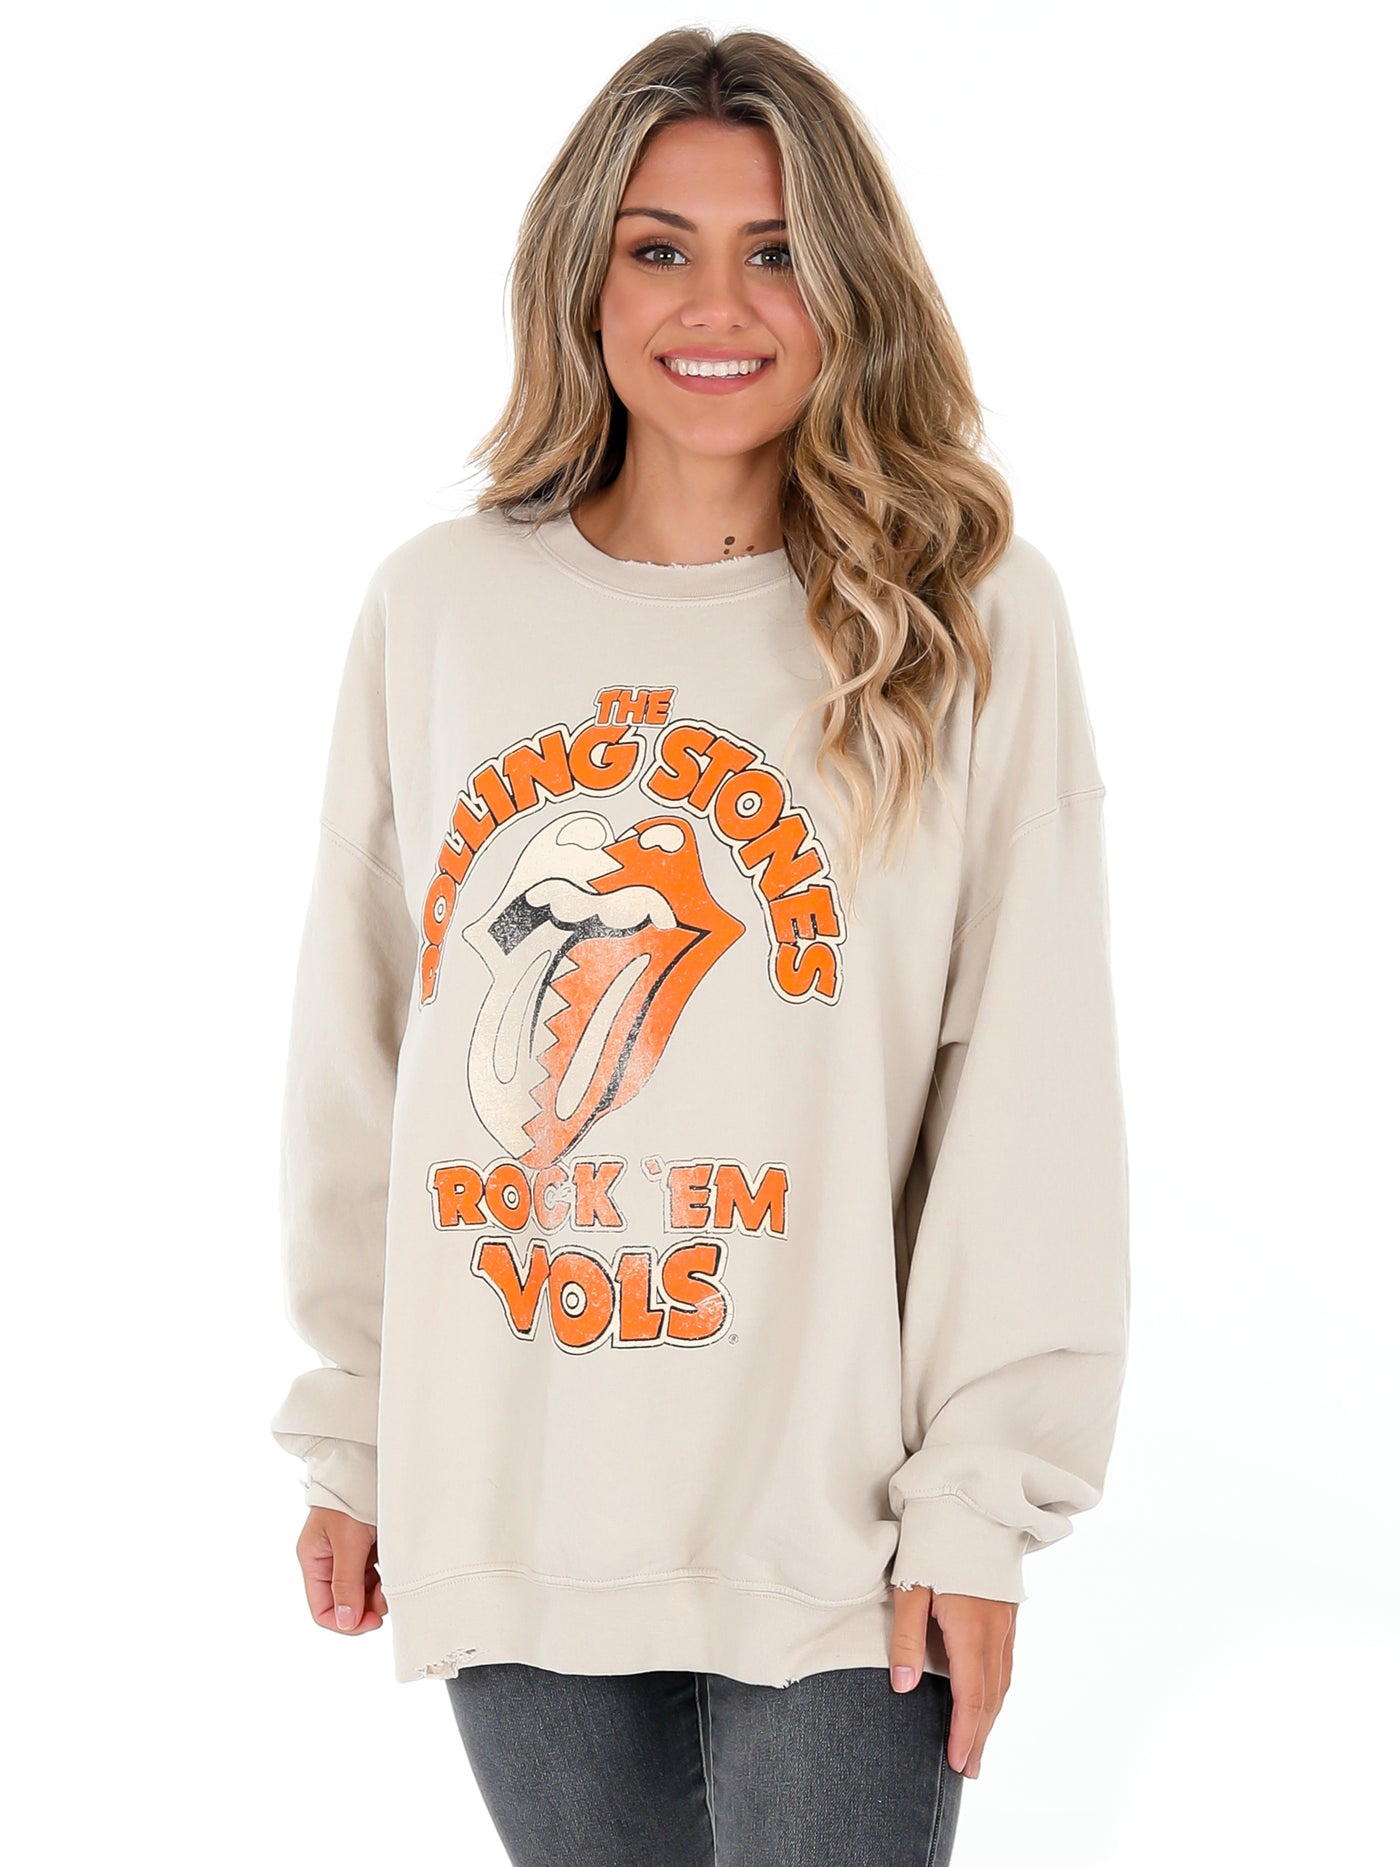 Rolling Stones Rock 'Em Vols Sweatshirt